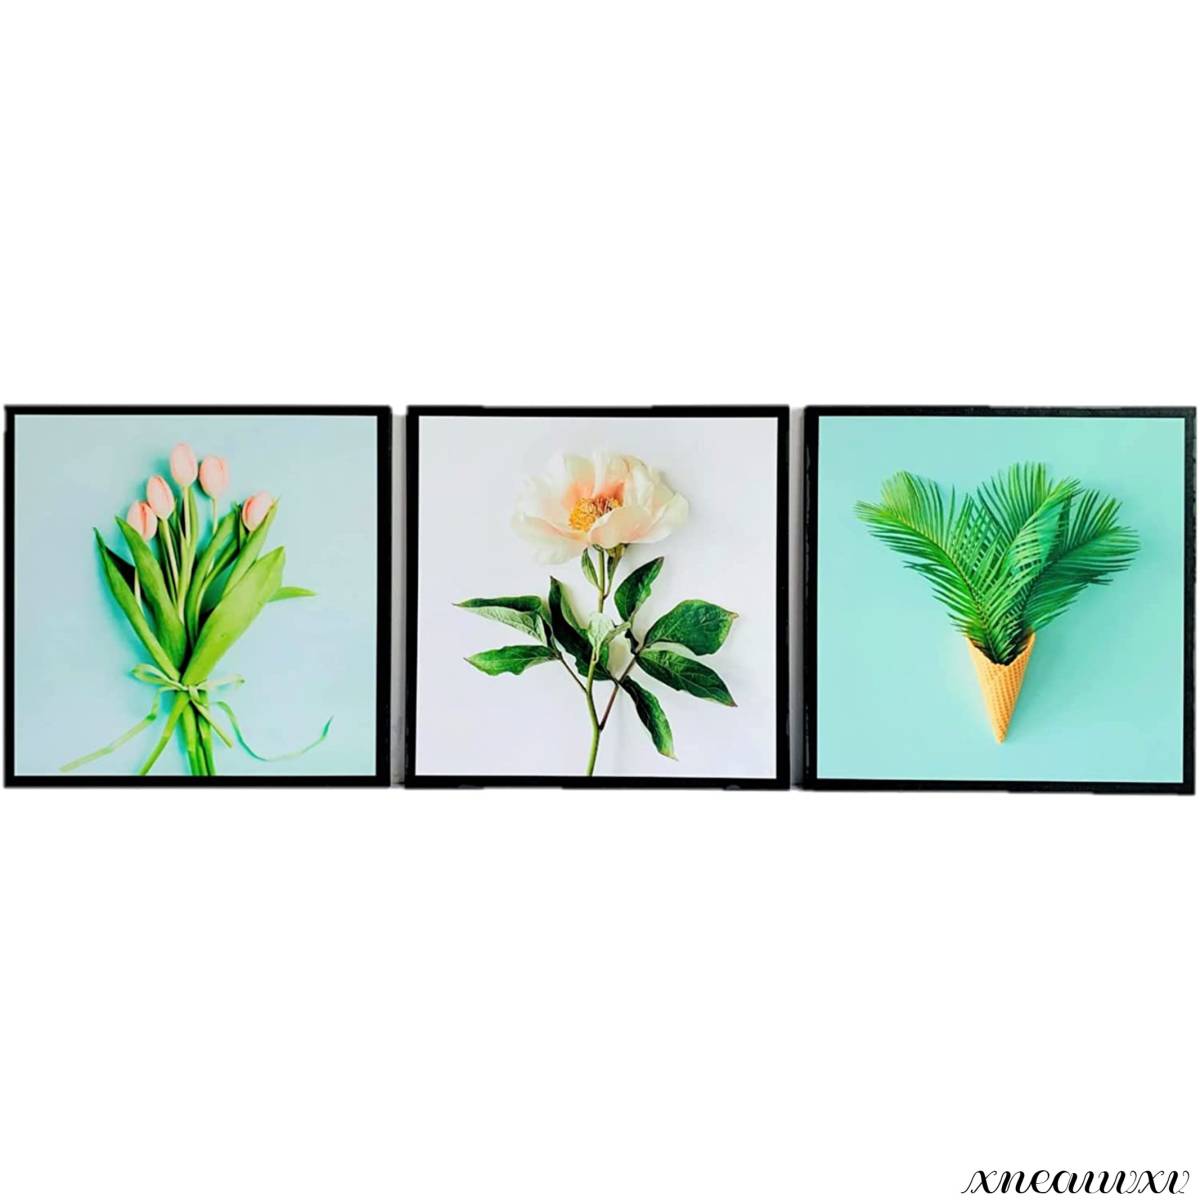 おしゃれな 3枚アートパネル 花 植物 インテリア 壁掛け 部屋飾り 自然 フラワー キャンバス 絵画 おしゃれ ウォール アート 芸術 カラフル, 美術品, 絵画, グラフィック